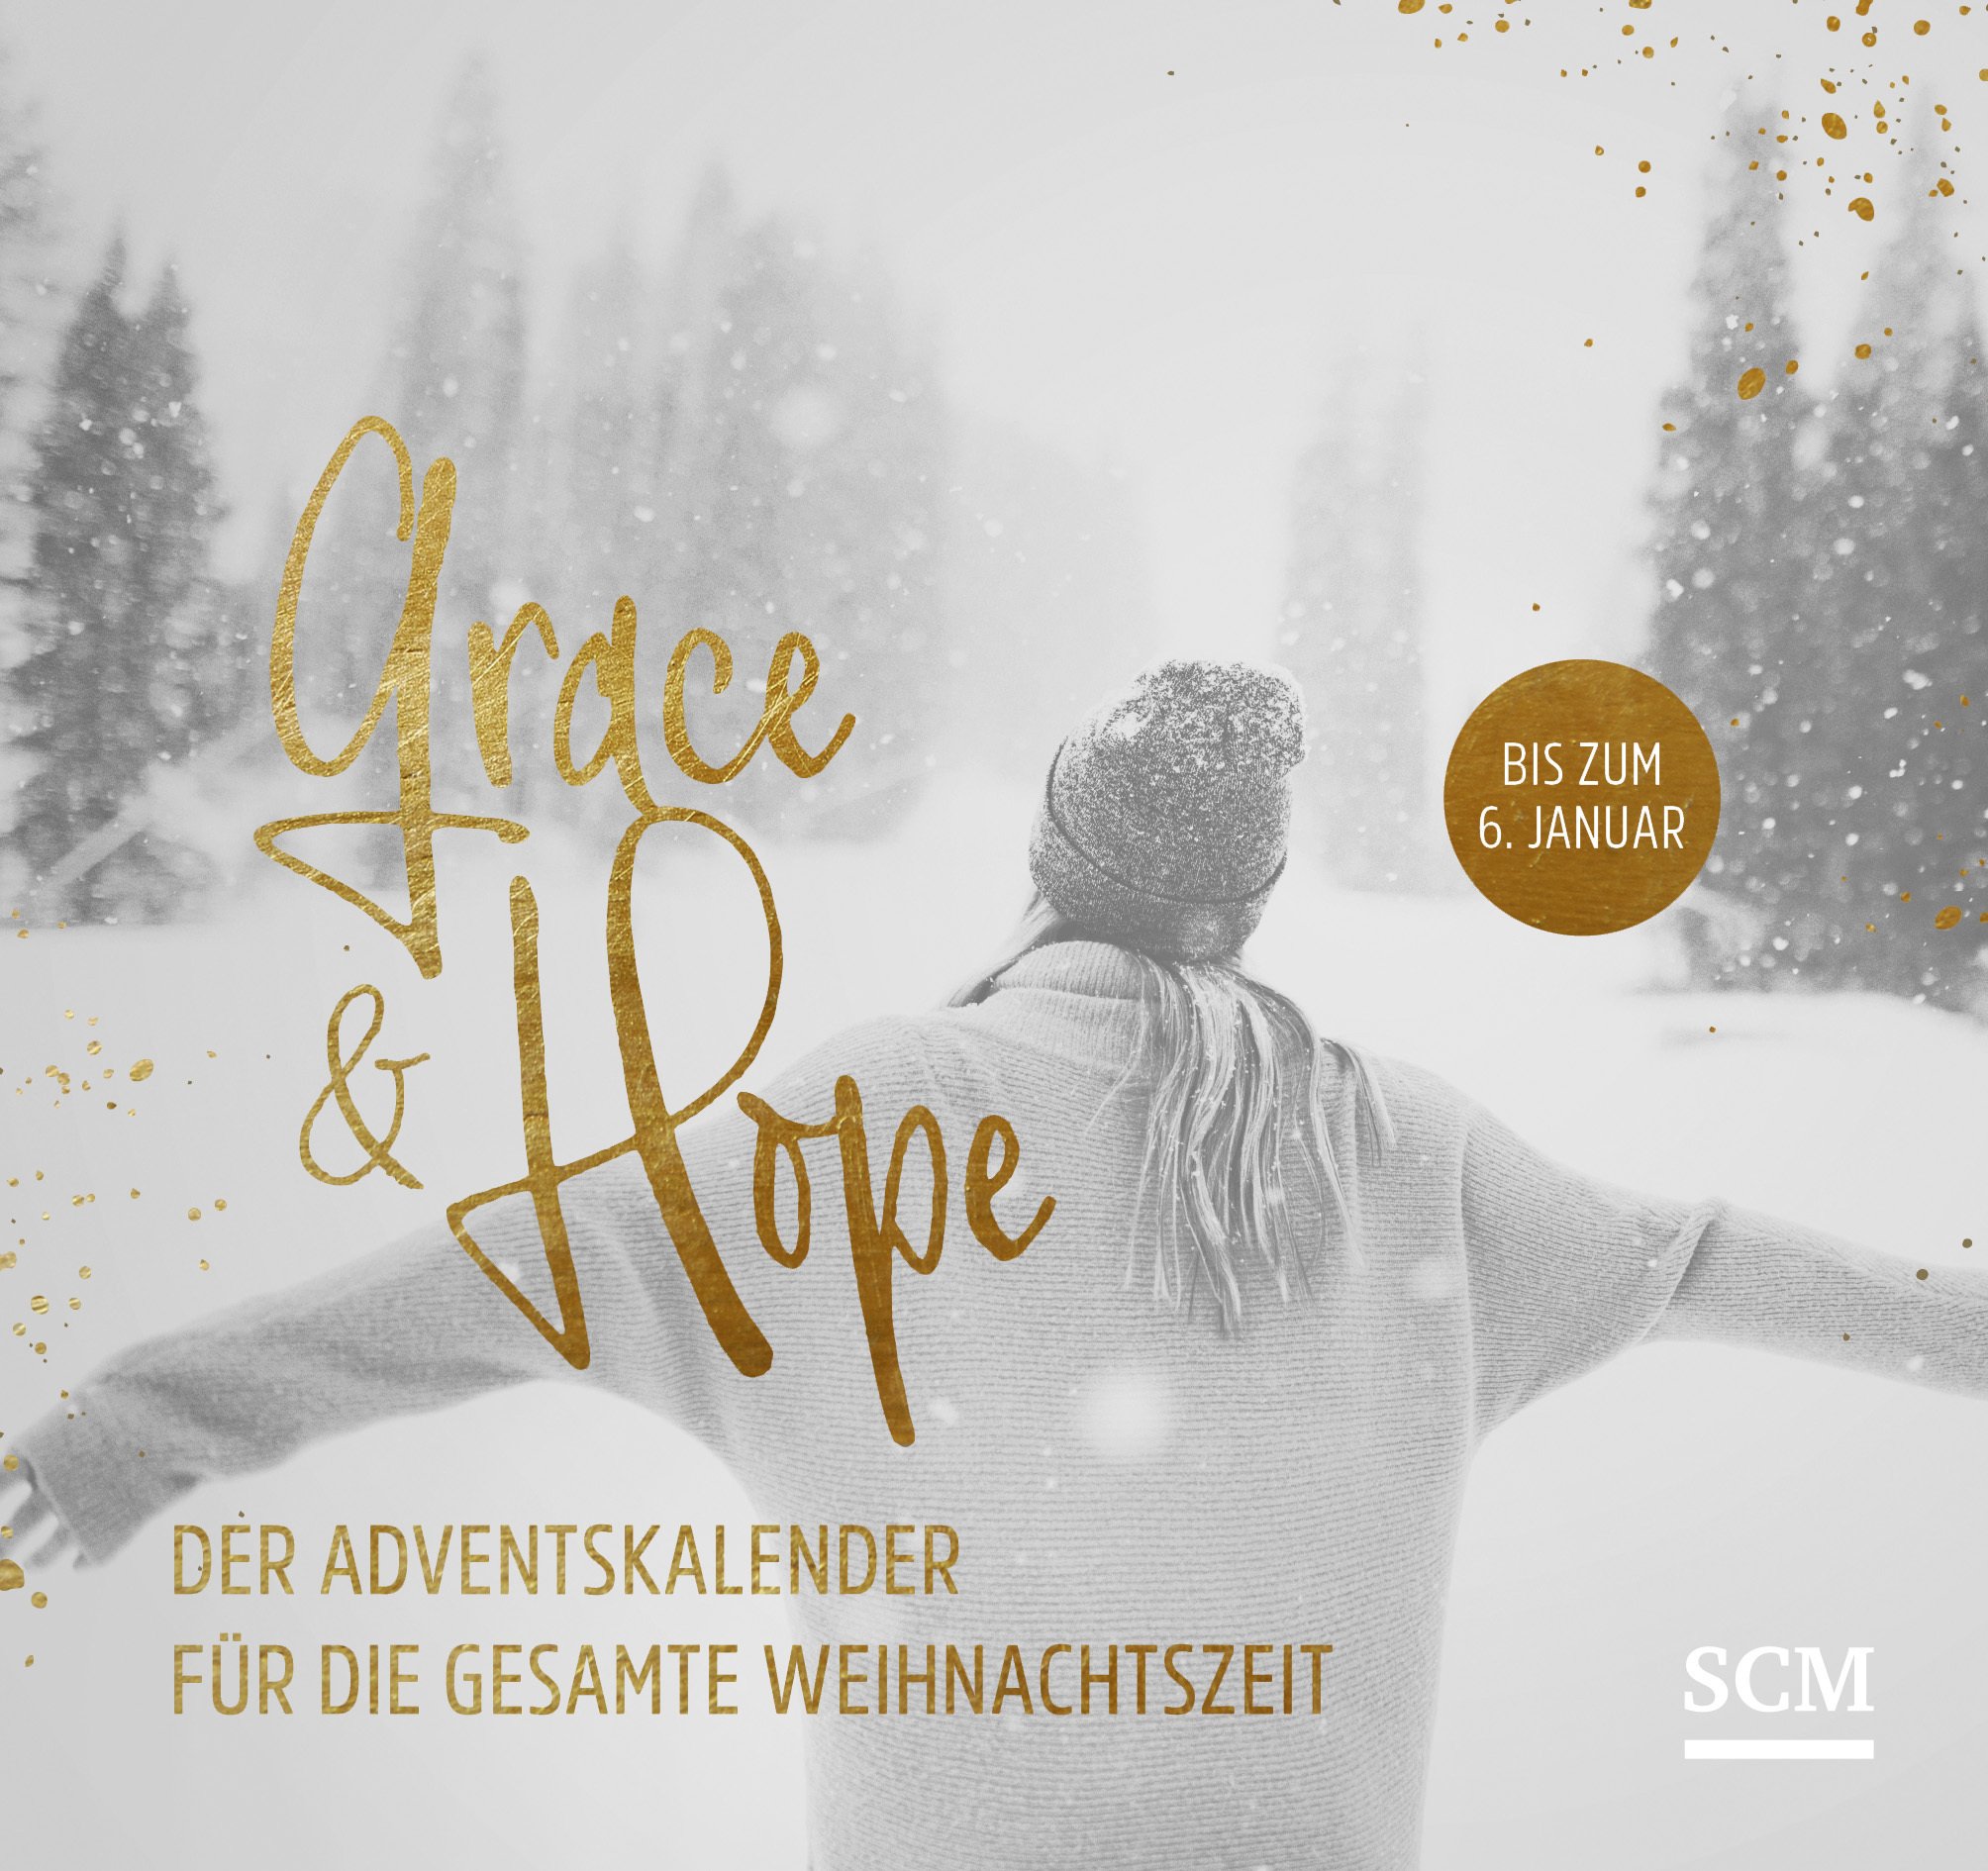 Grace & Hope - Der Adventskalender (Aufstellbuch)
... für die gesamte Weihnachtszeit